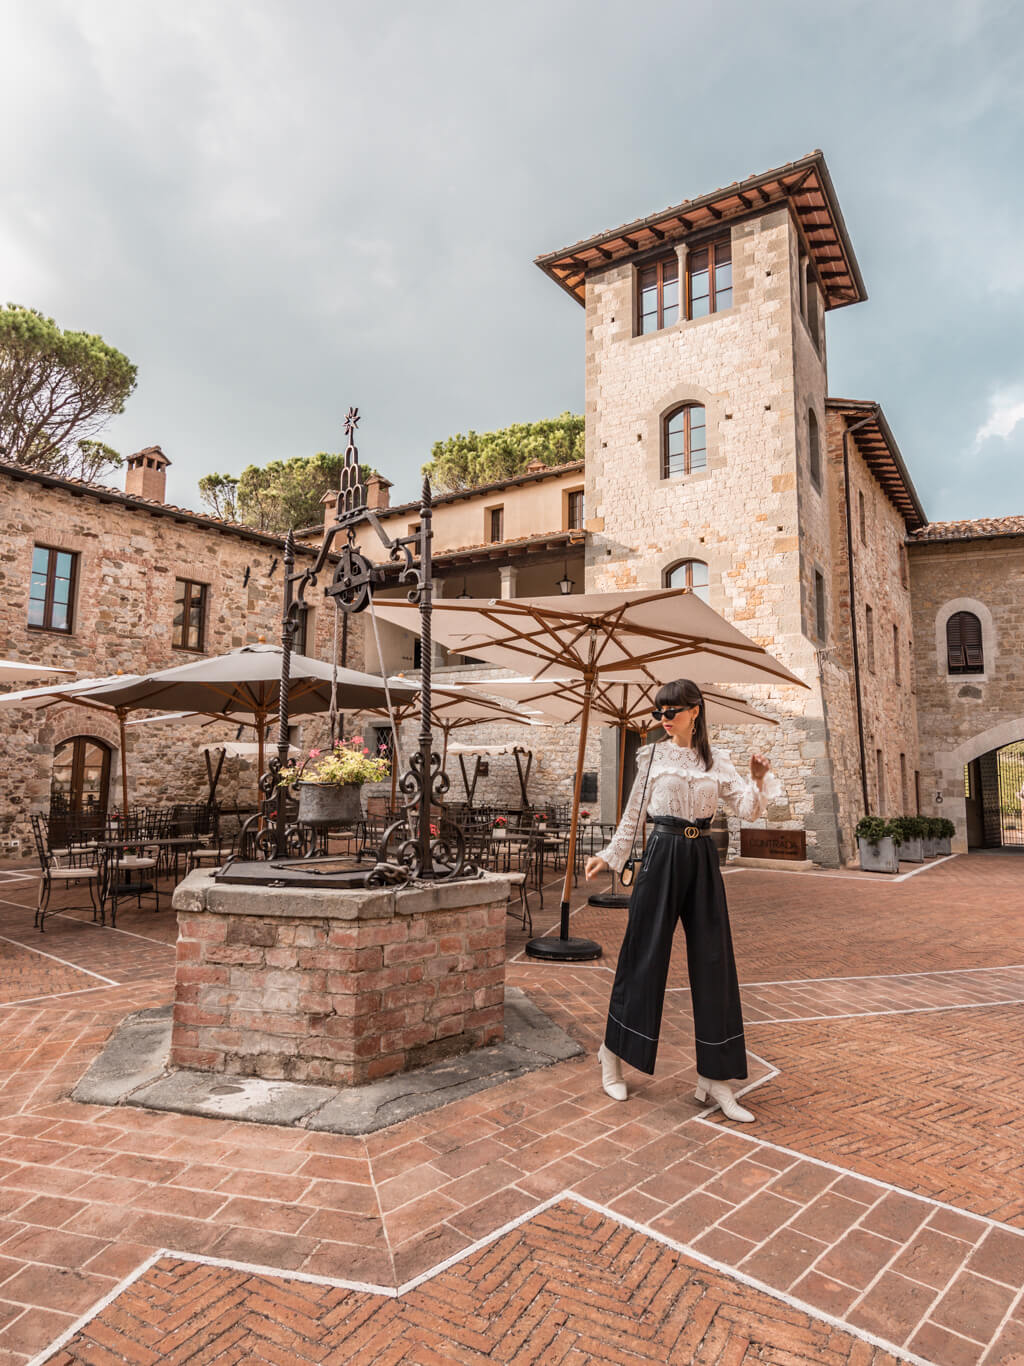 Beautiful hotel in Tuscany, Italy - Castel Monastero Resort & Spa